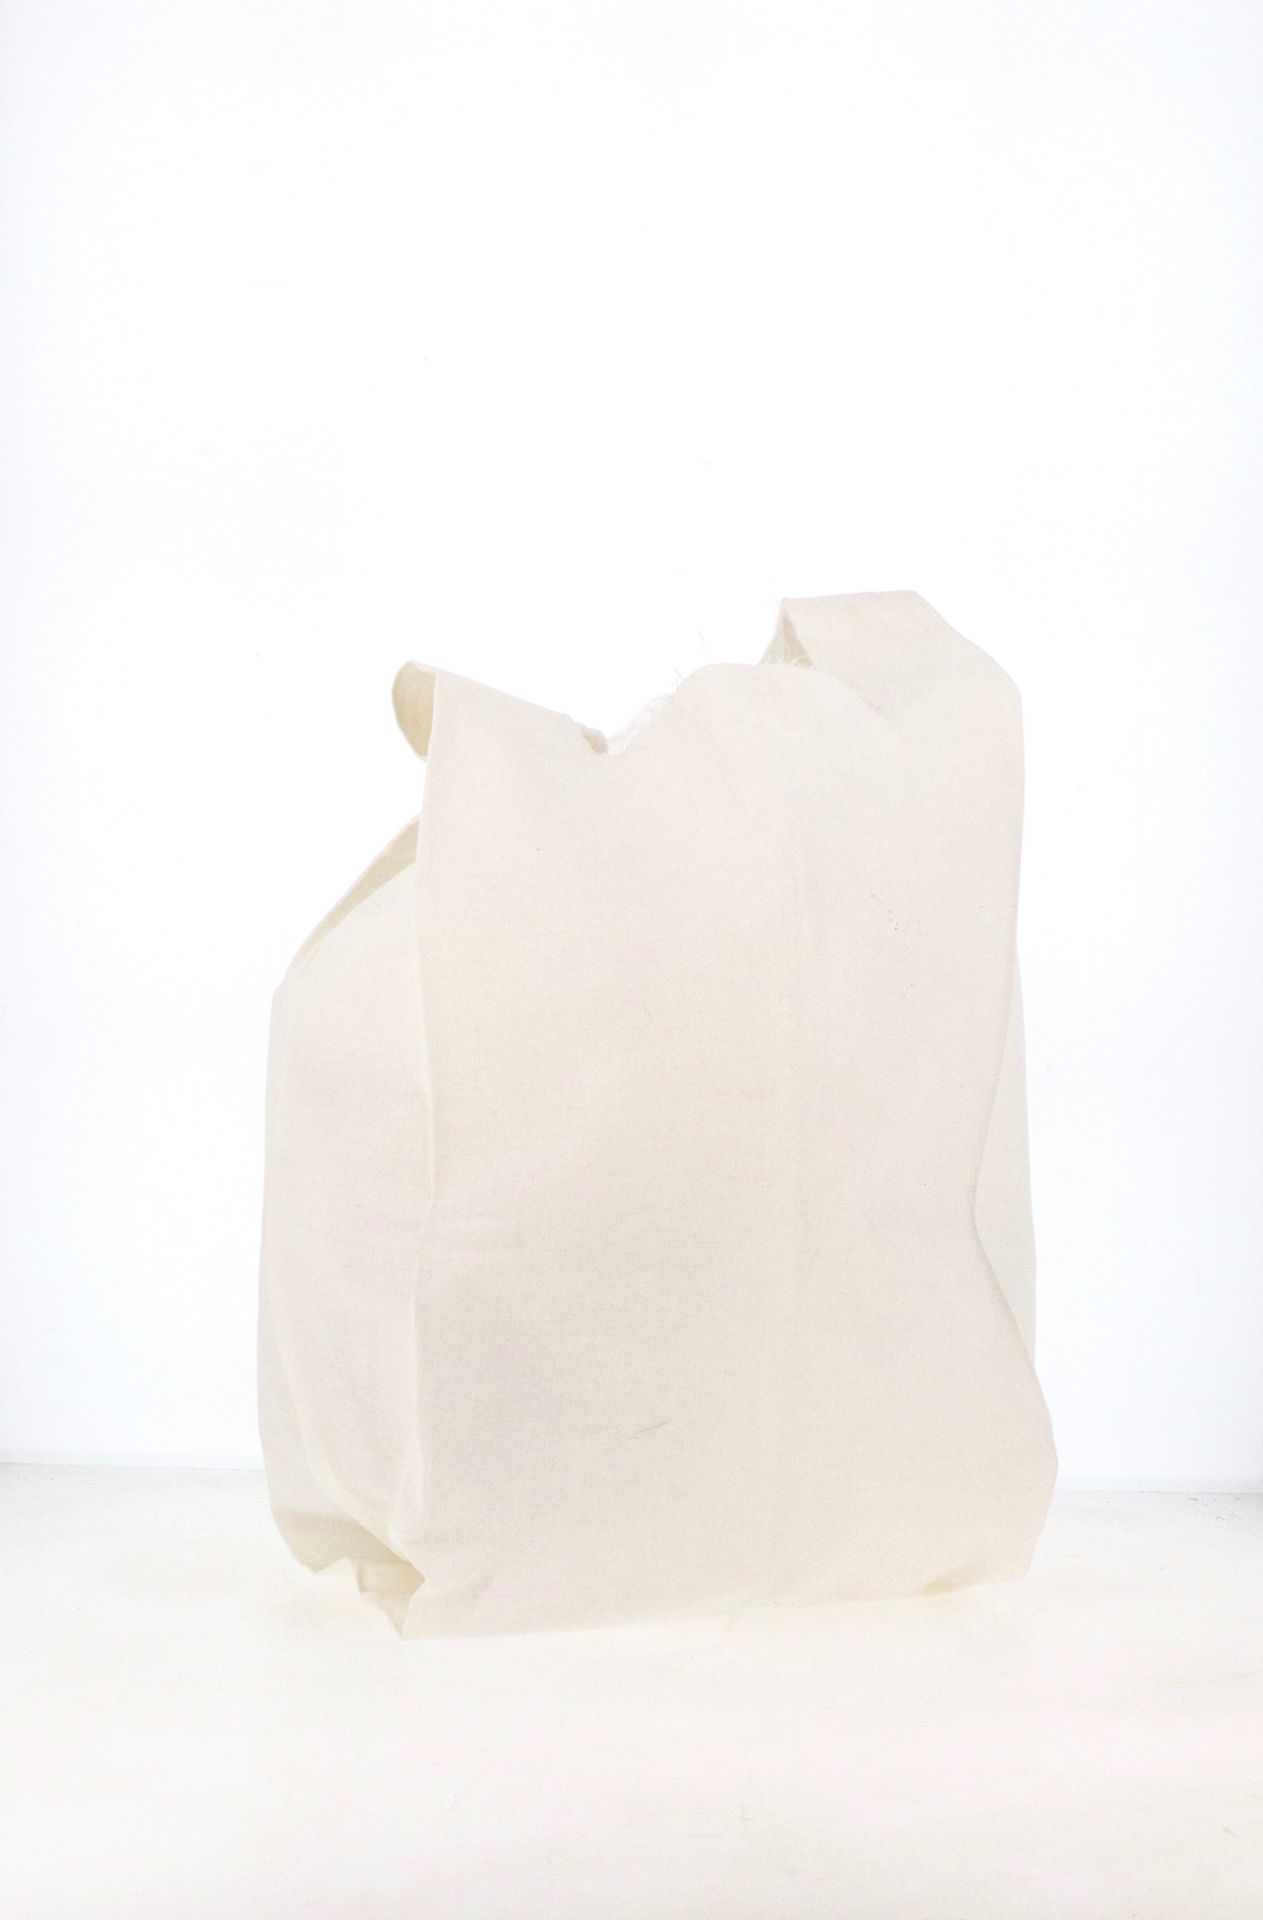 MAISON MARTIN MARGIELA Einkaufstasche 

aus weißer Baumwolle

Ca. 58 x 29 cm

Oh&hellip;